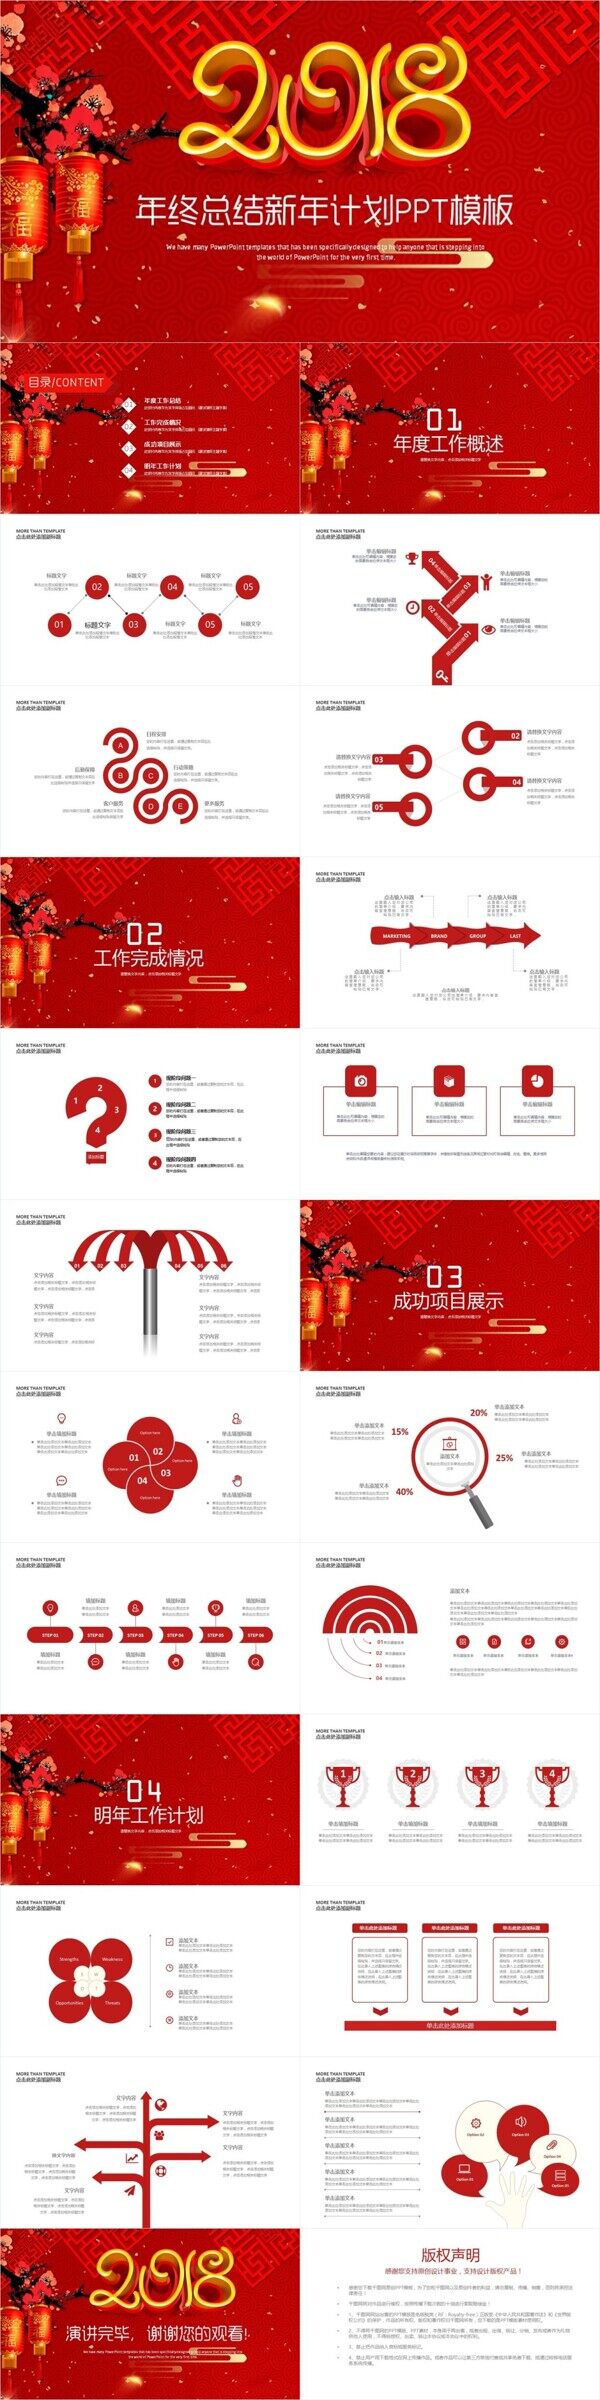 中国红年终总结新年计划PPT模板